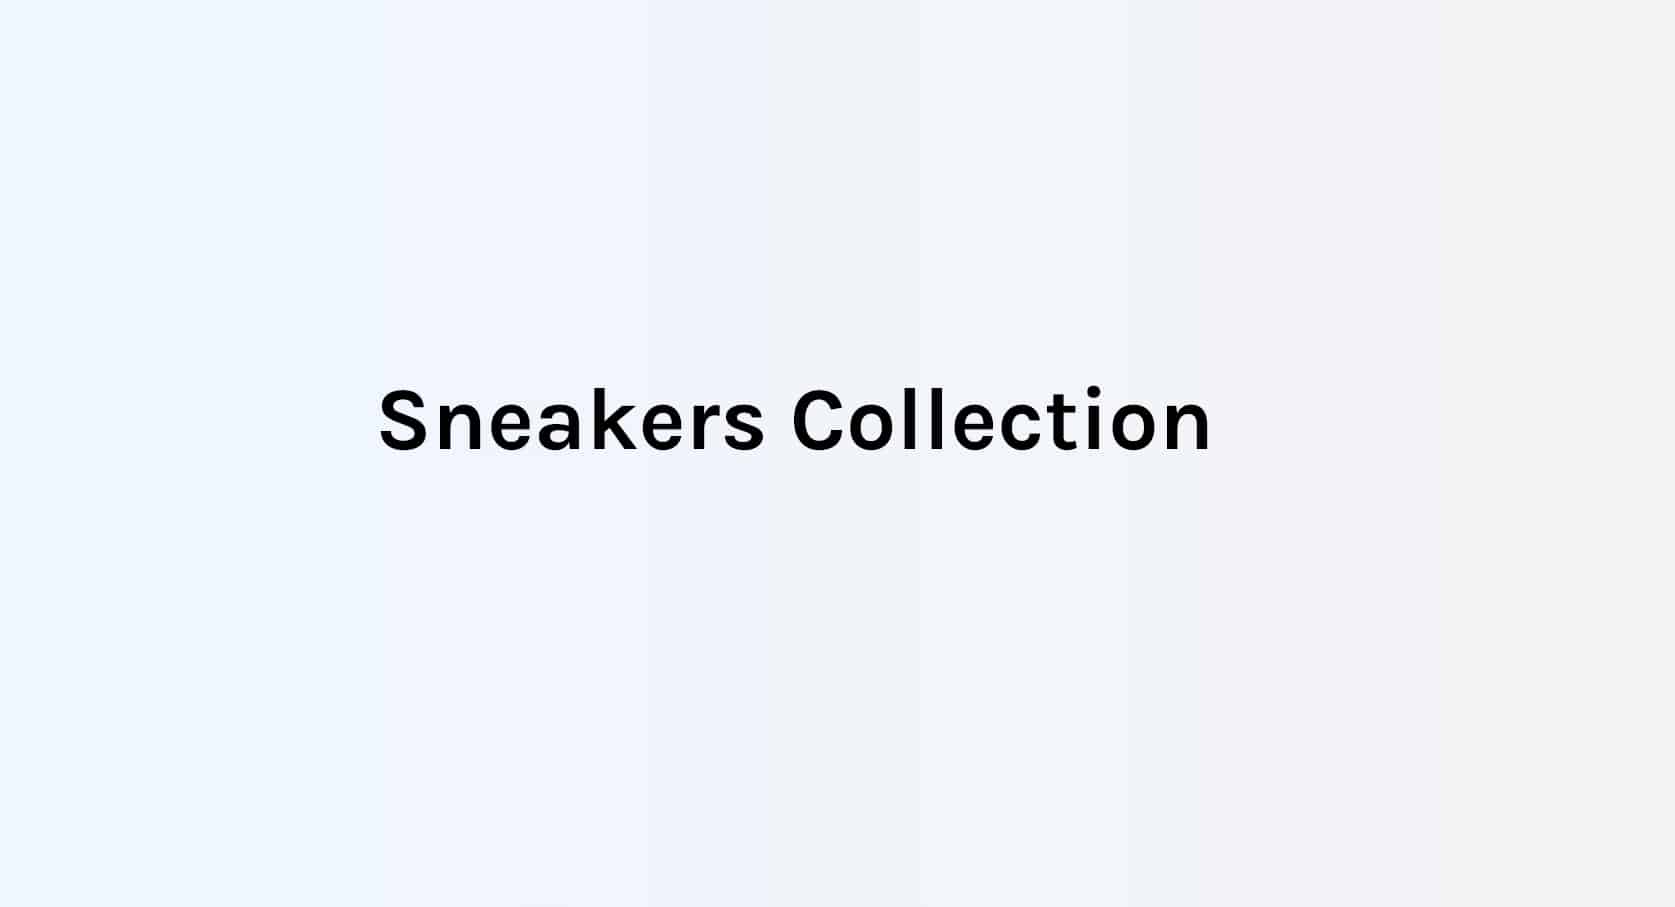 Image de présentation de la web app Sneakers Collection